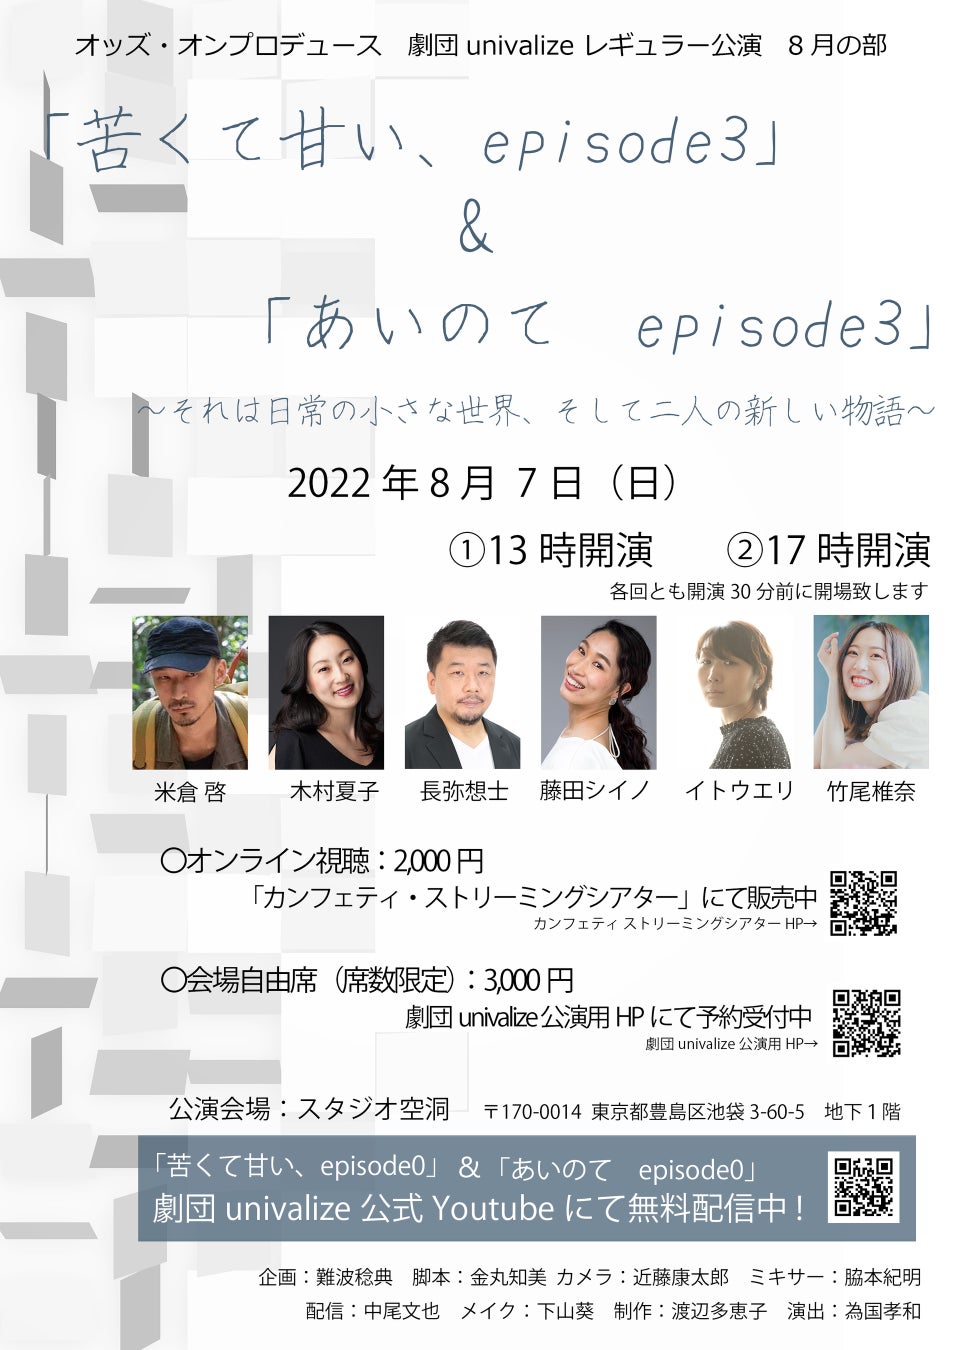 【イベントレポート】卒業生声優、神尾晋一郎さんによる『声優適性オーディション』